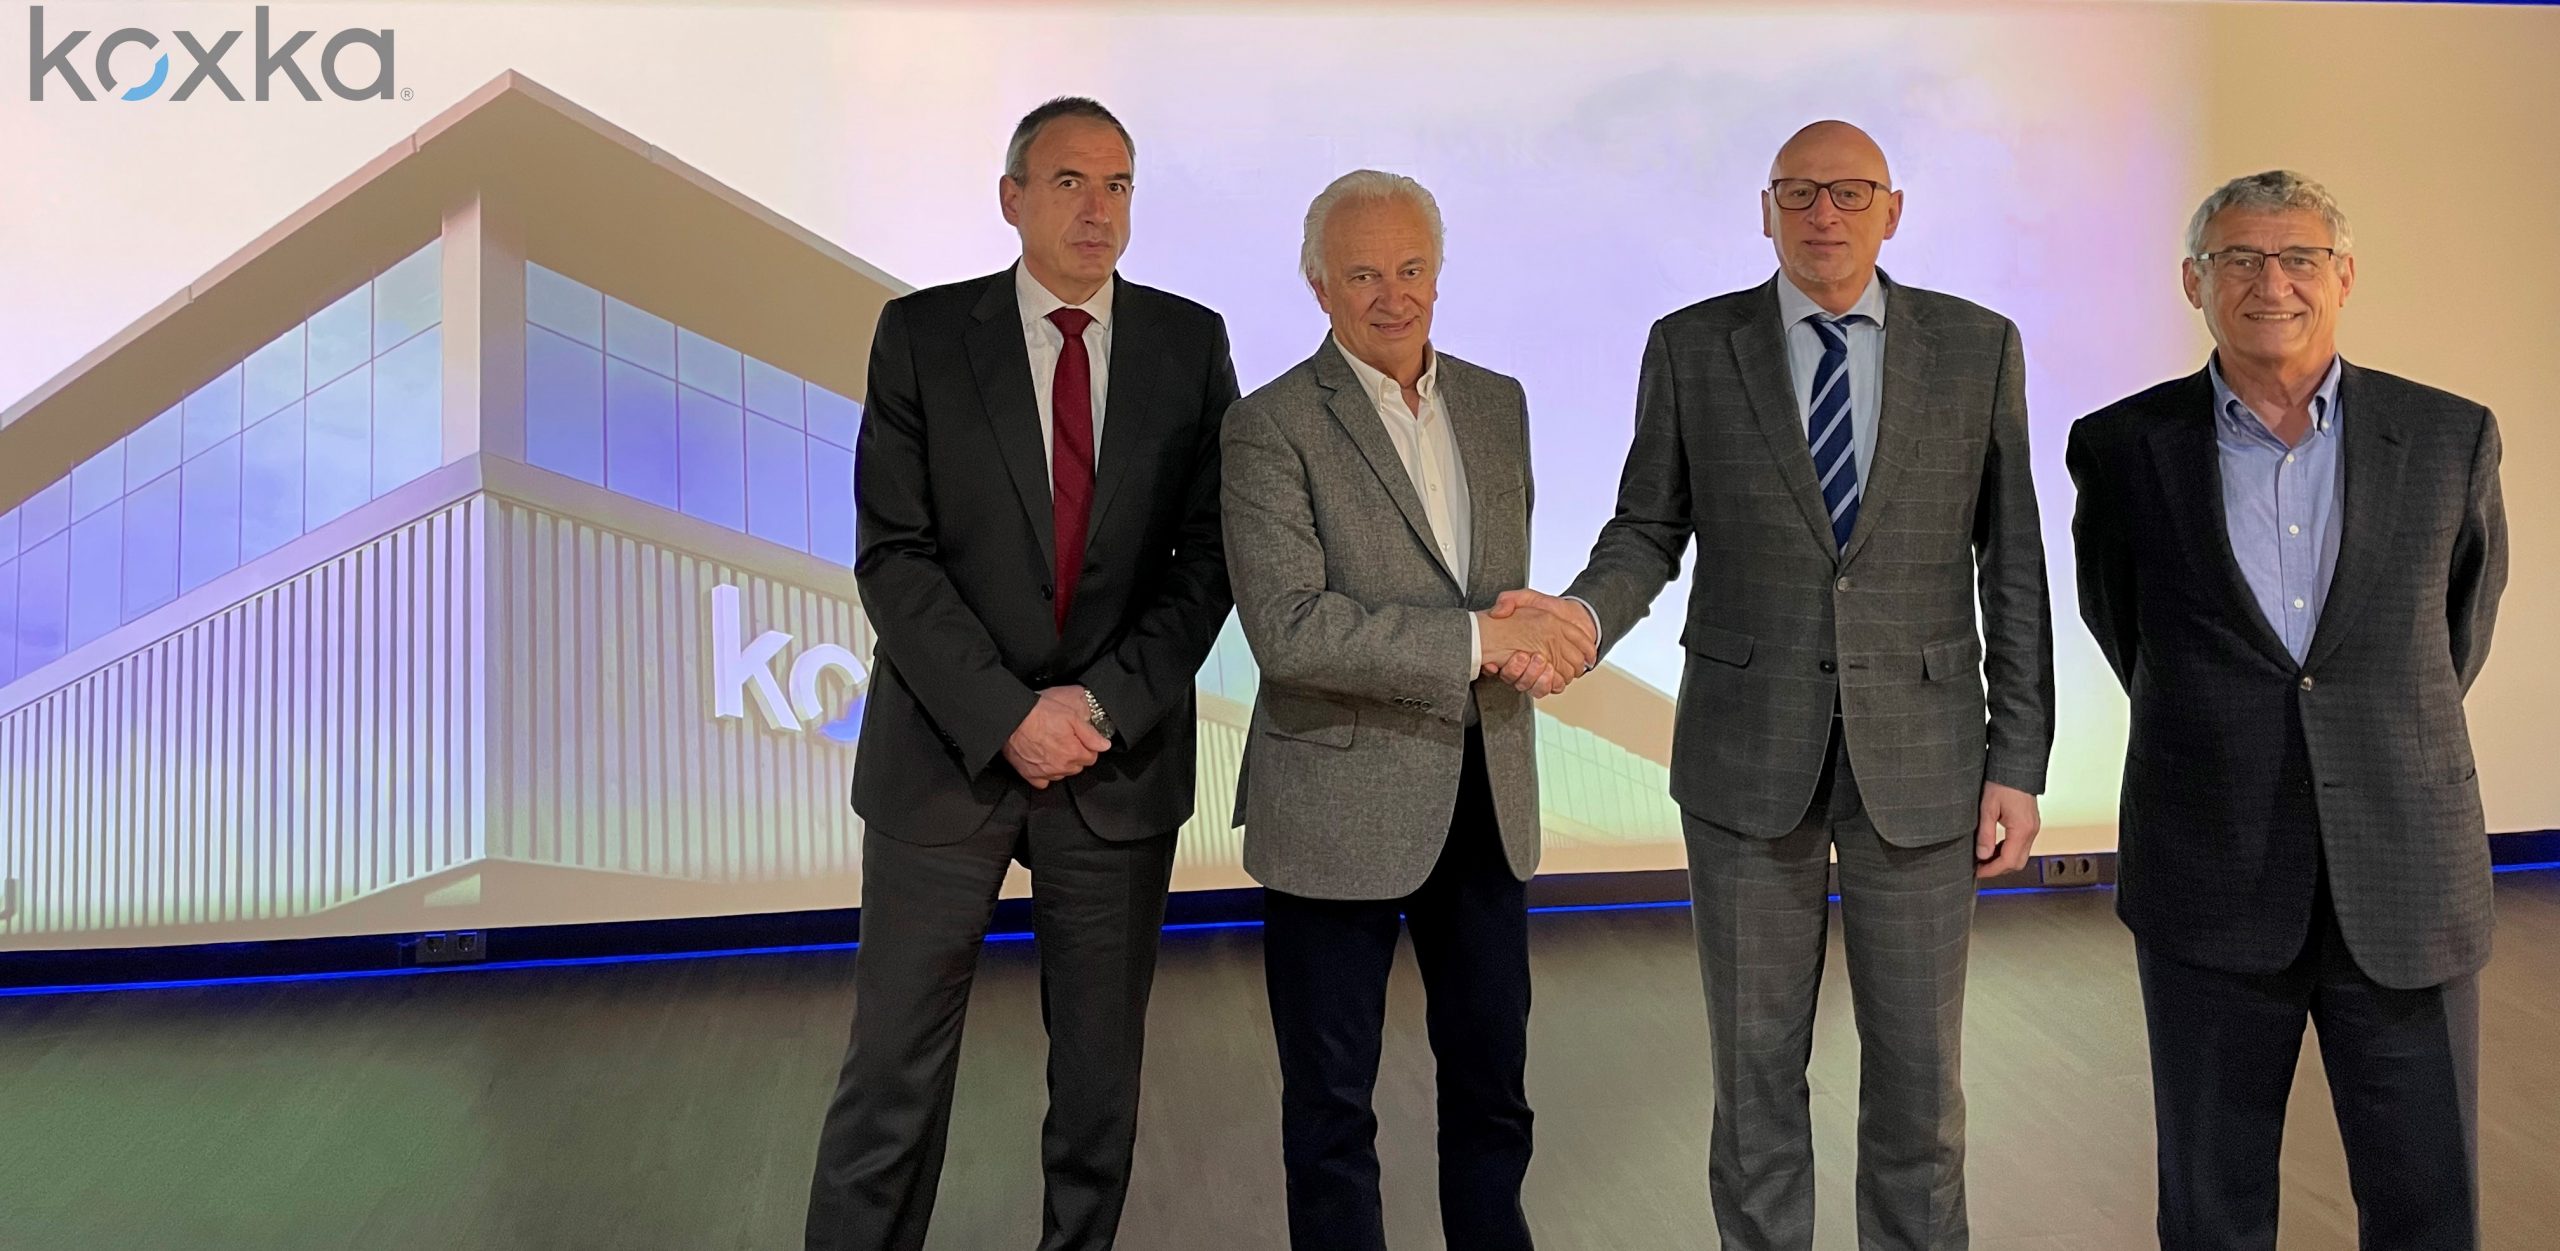 directivos de Koxka firmando el acuerdo de adquisicion de sus dos plantas fabriles